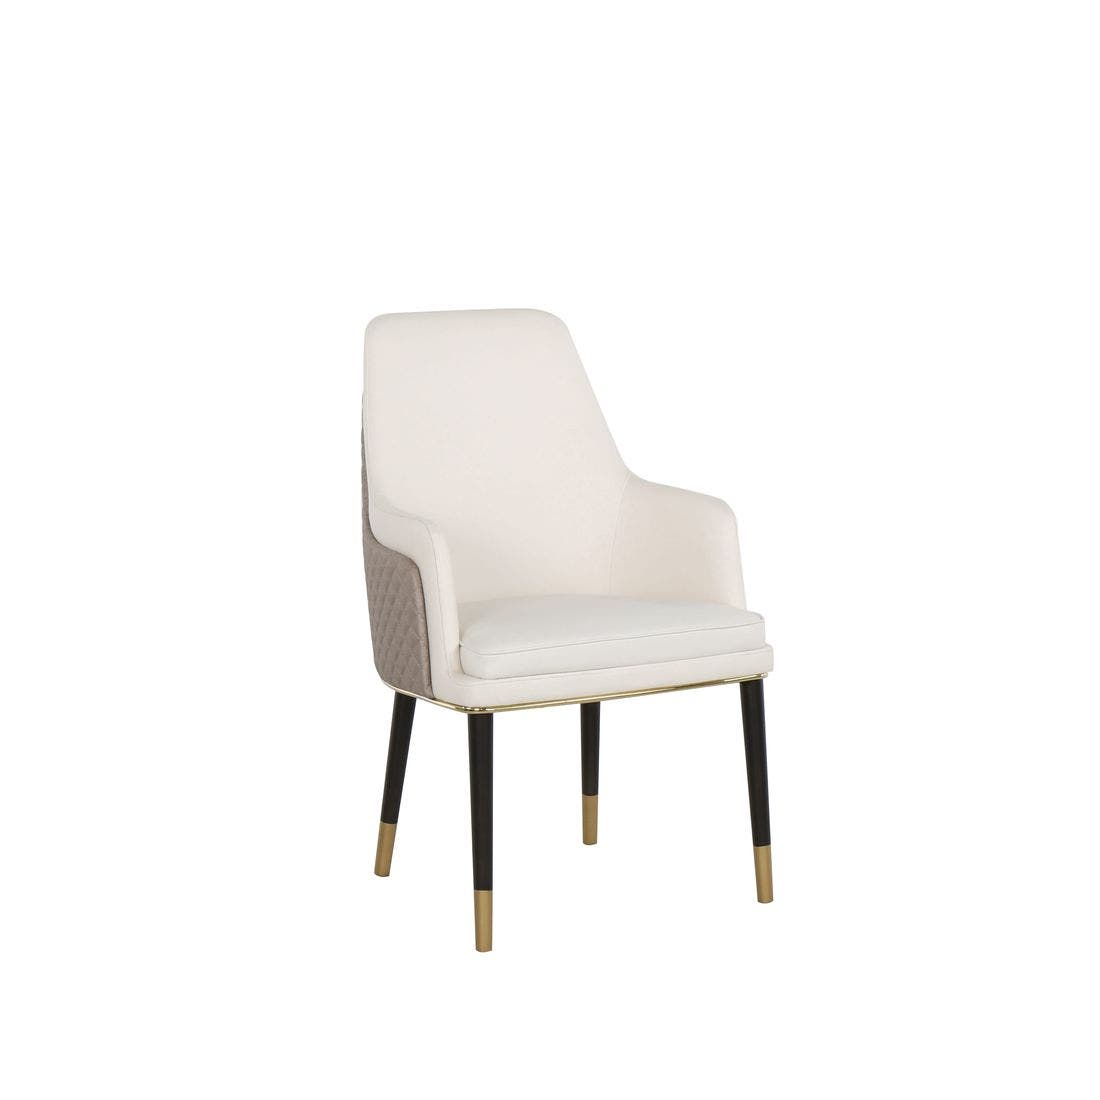 เก้าอี้ทานอาหาร เก้าอี้เหล็กเบาะหนัง รุ่น Woman-Plus สีสีเทา-SB Design Square